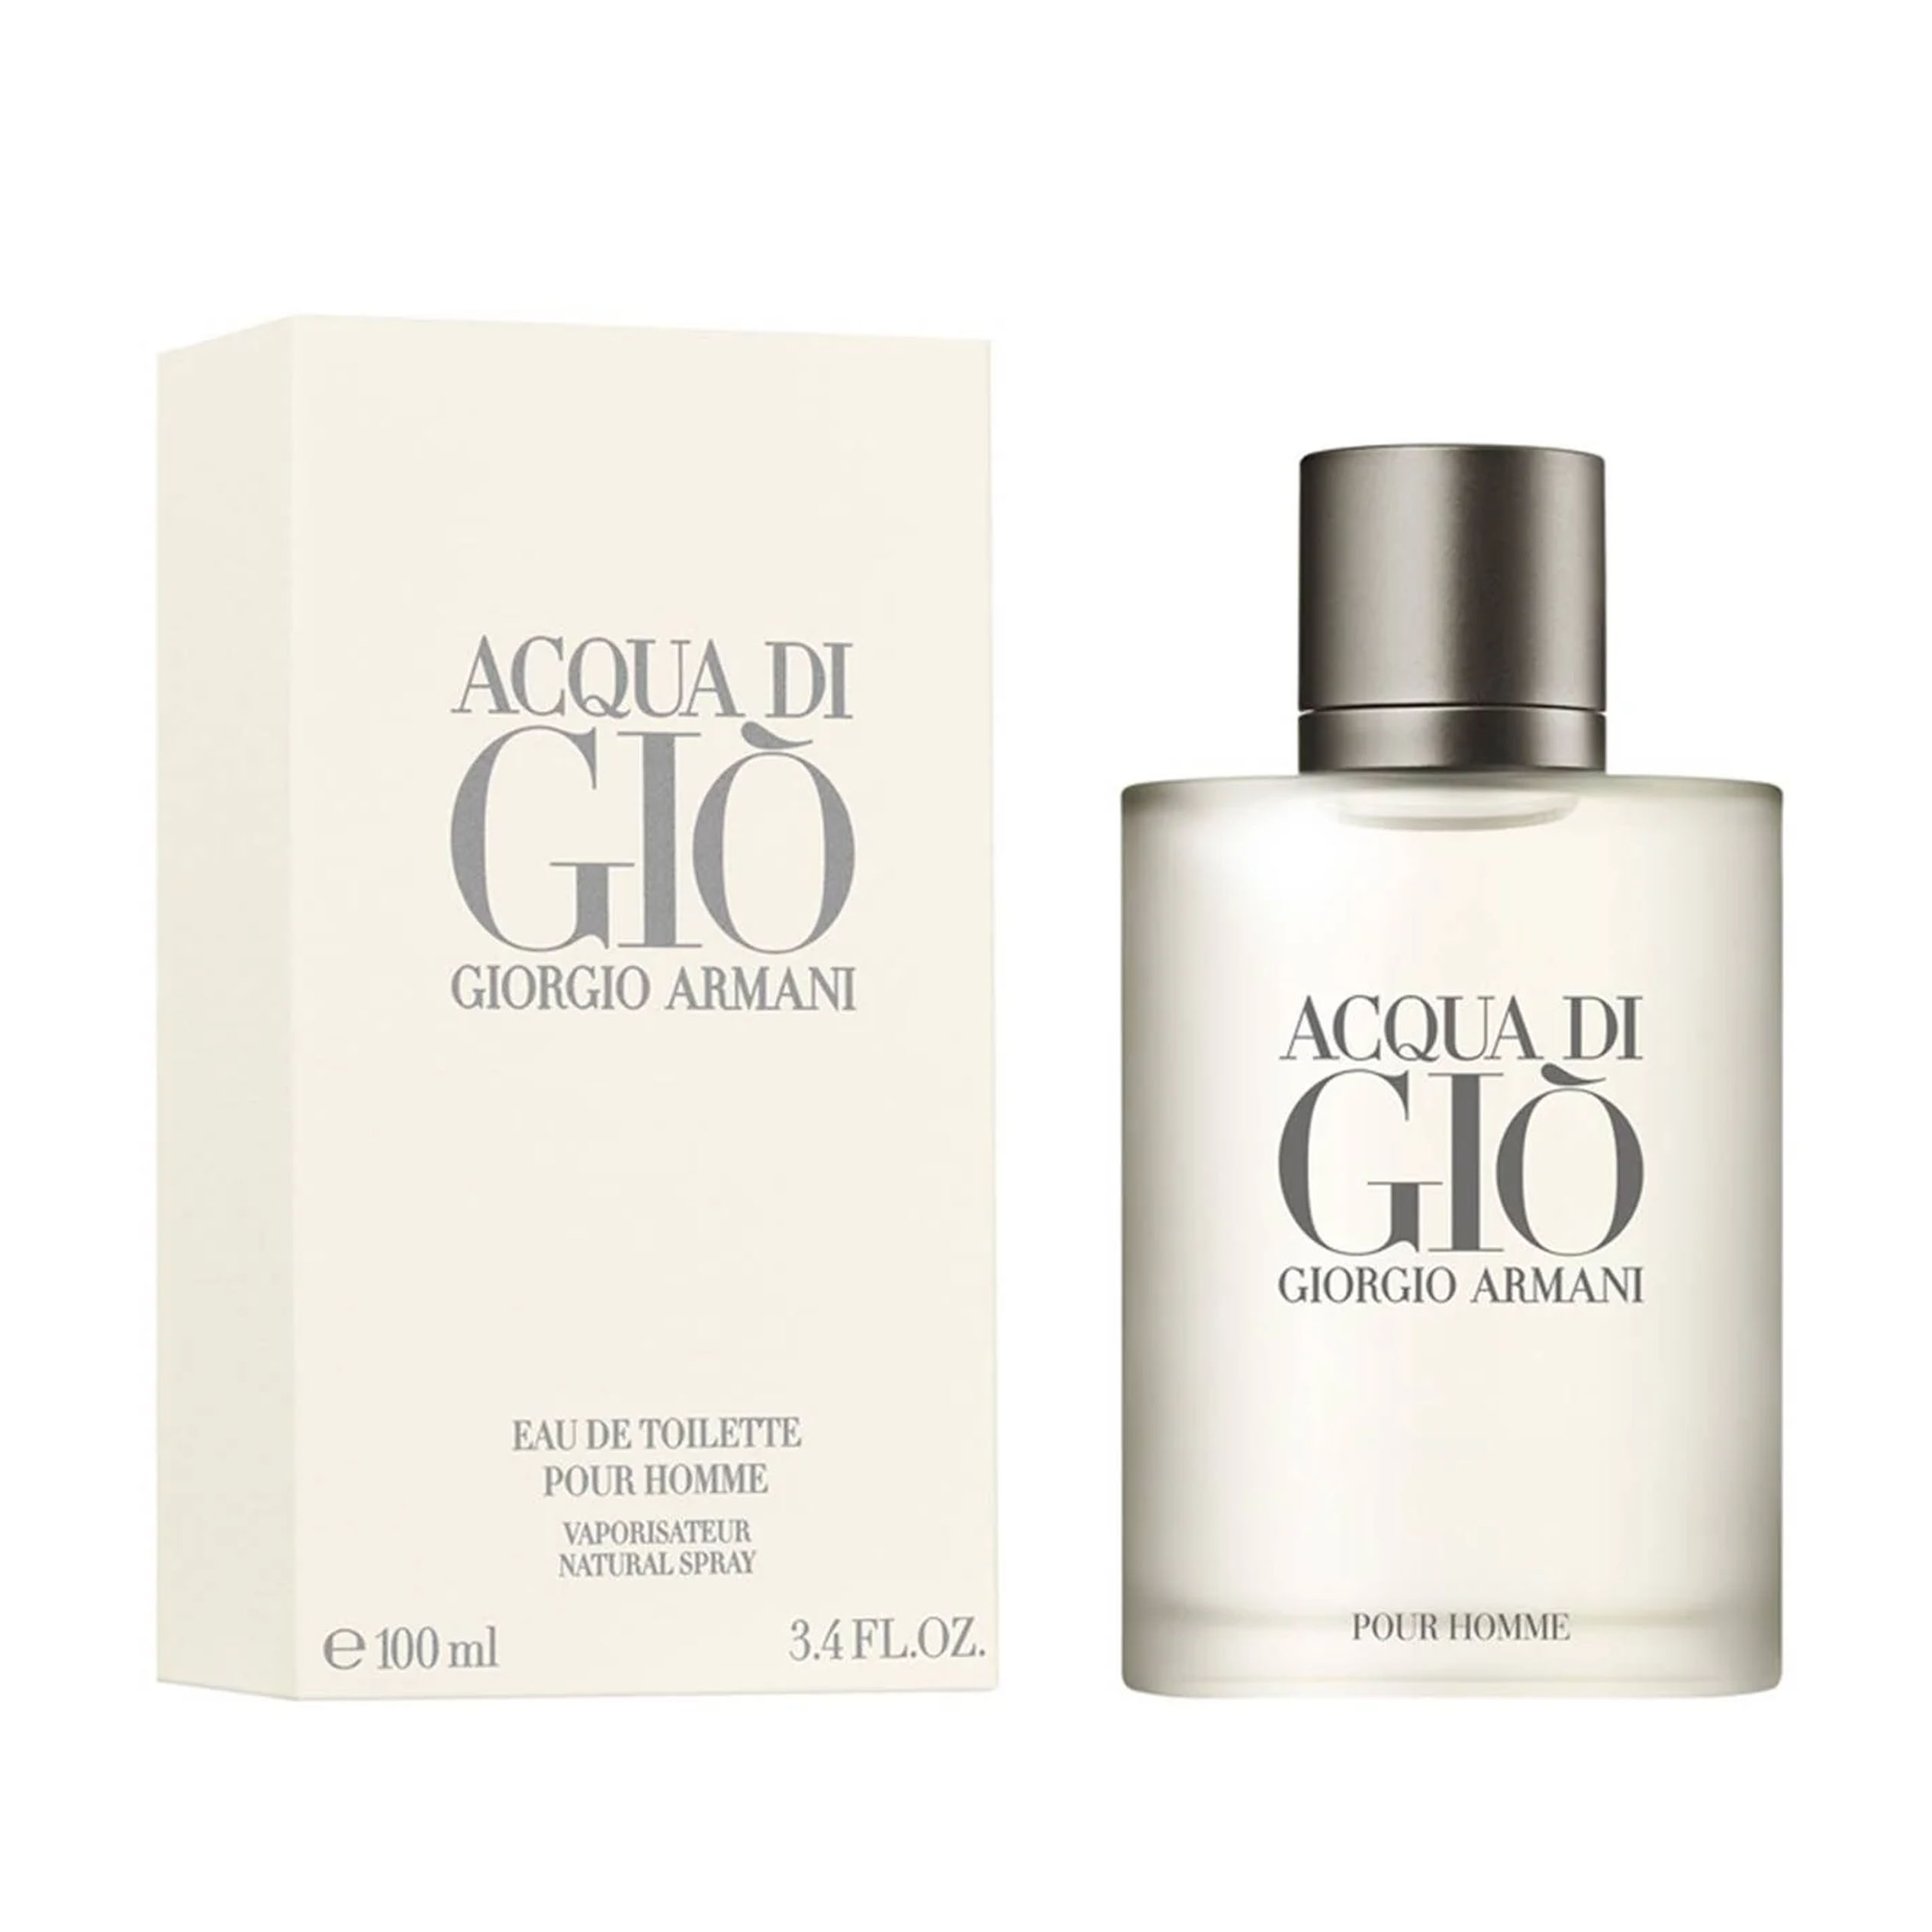 Perfume Acqua Di Gio Giorgio Armani  (Replica Con Fragancia Importada)- Hombre